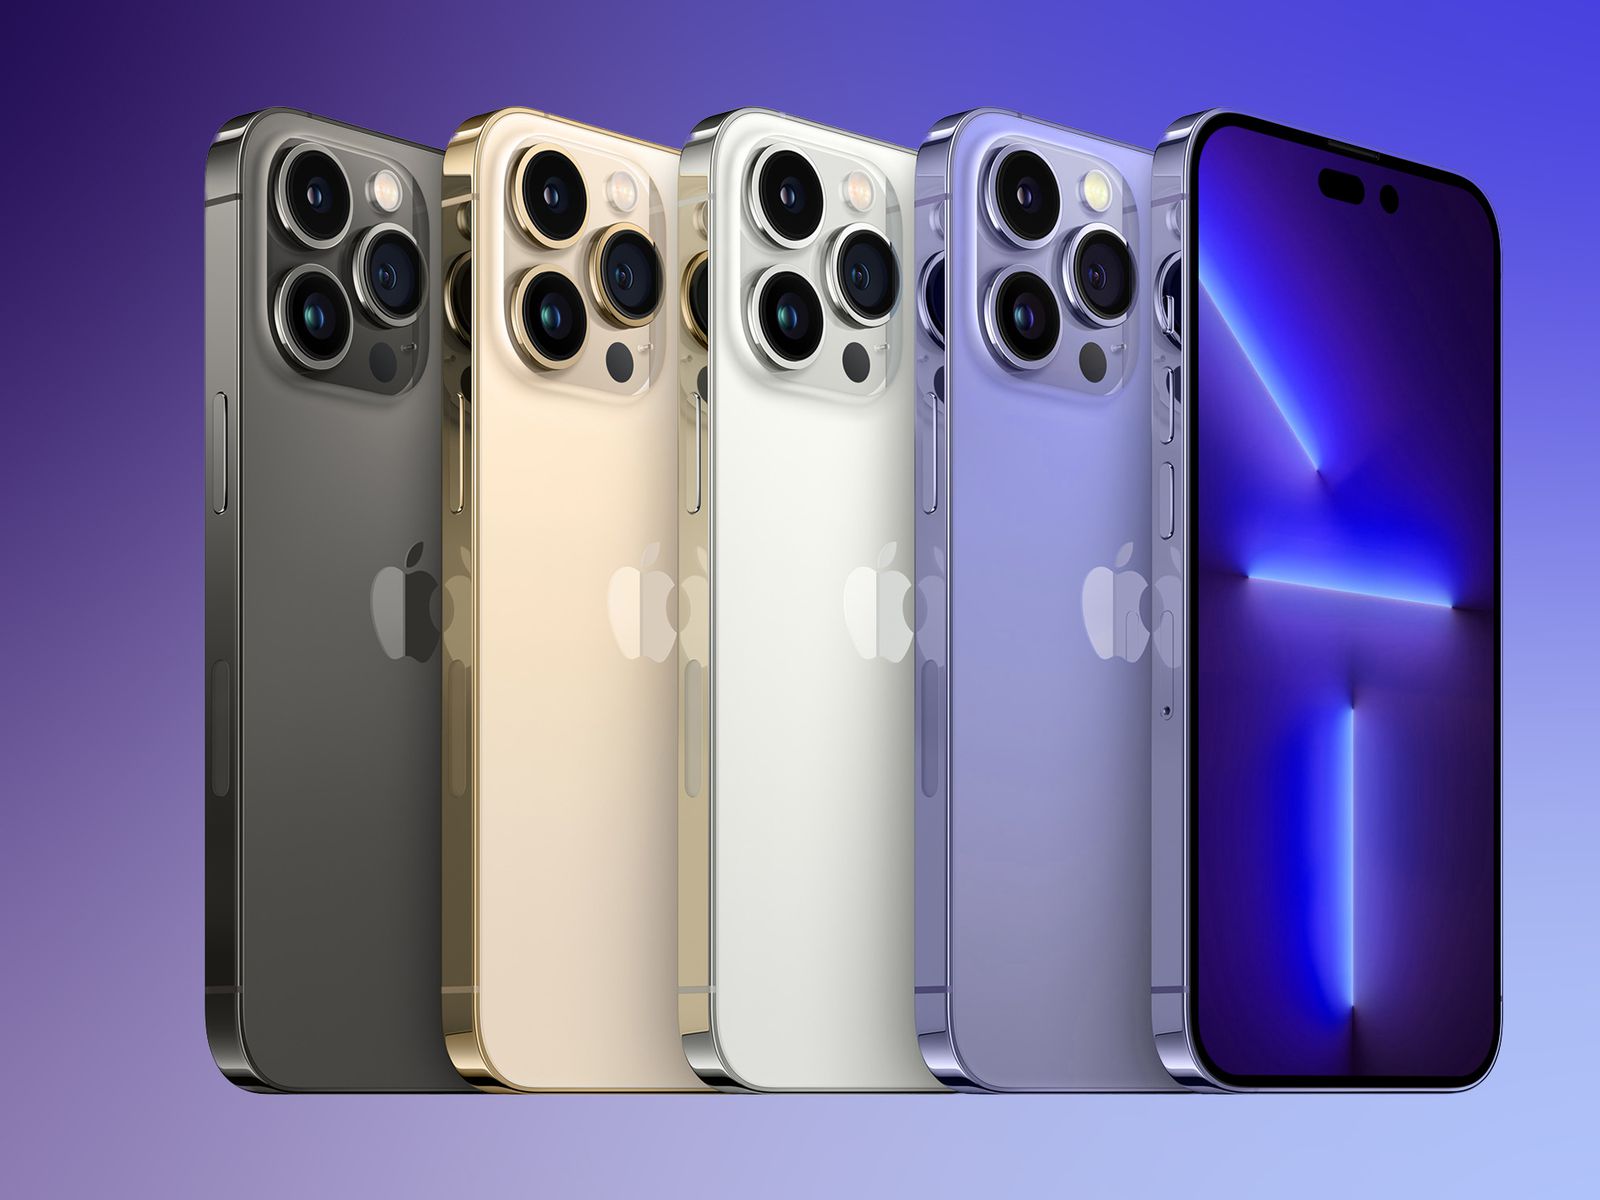 Sắc tím quyến rũ của chiếc iPhone 14 sẽ khiến bạn không thể rời mắt! Sử dụng các công nghệ tiên tiến và tính năng độc đáo, chiếc điện thoại này mang lại hiệu suất vượt trội. Bạn sẽ không thể cưỡng lại được sức hấp dẫn của chiếc iPhone 14 màu tím đầy sáng tạo này.